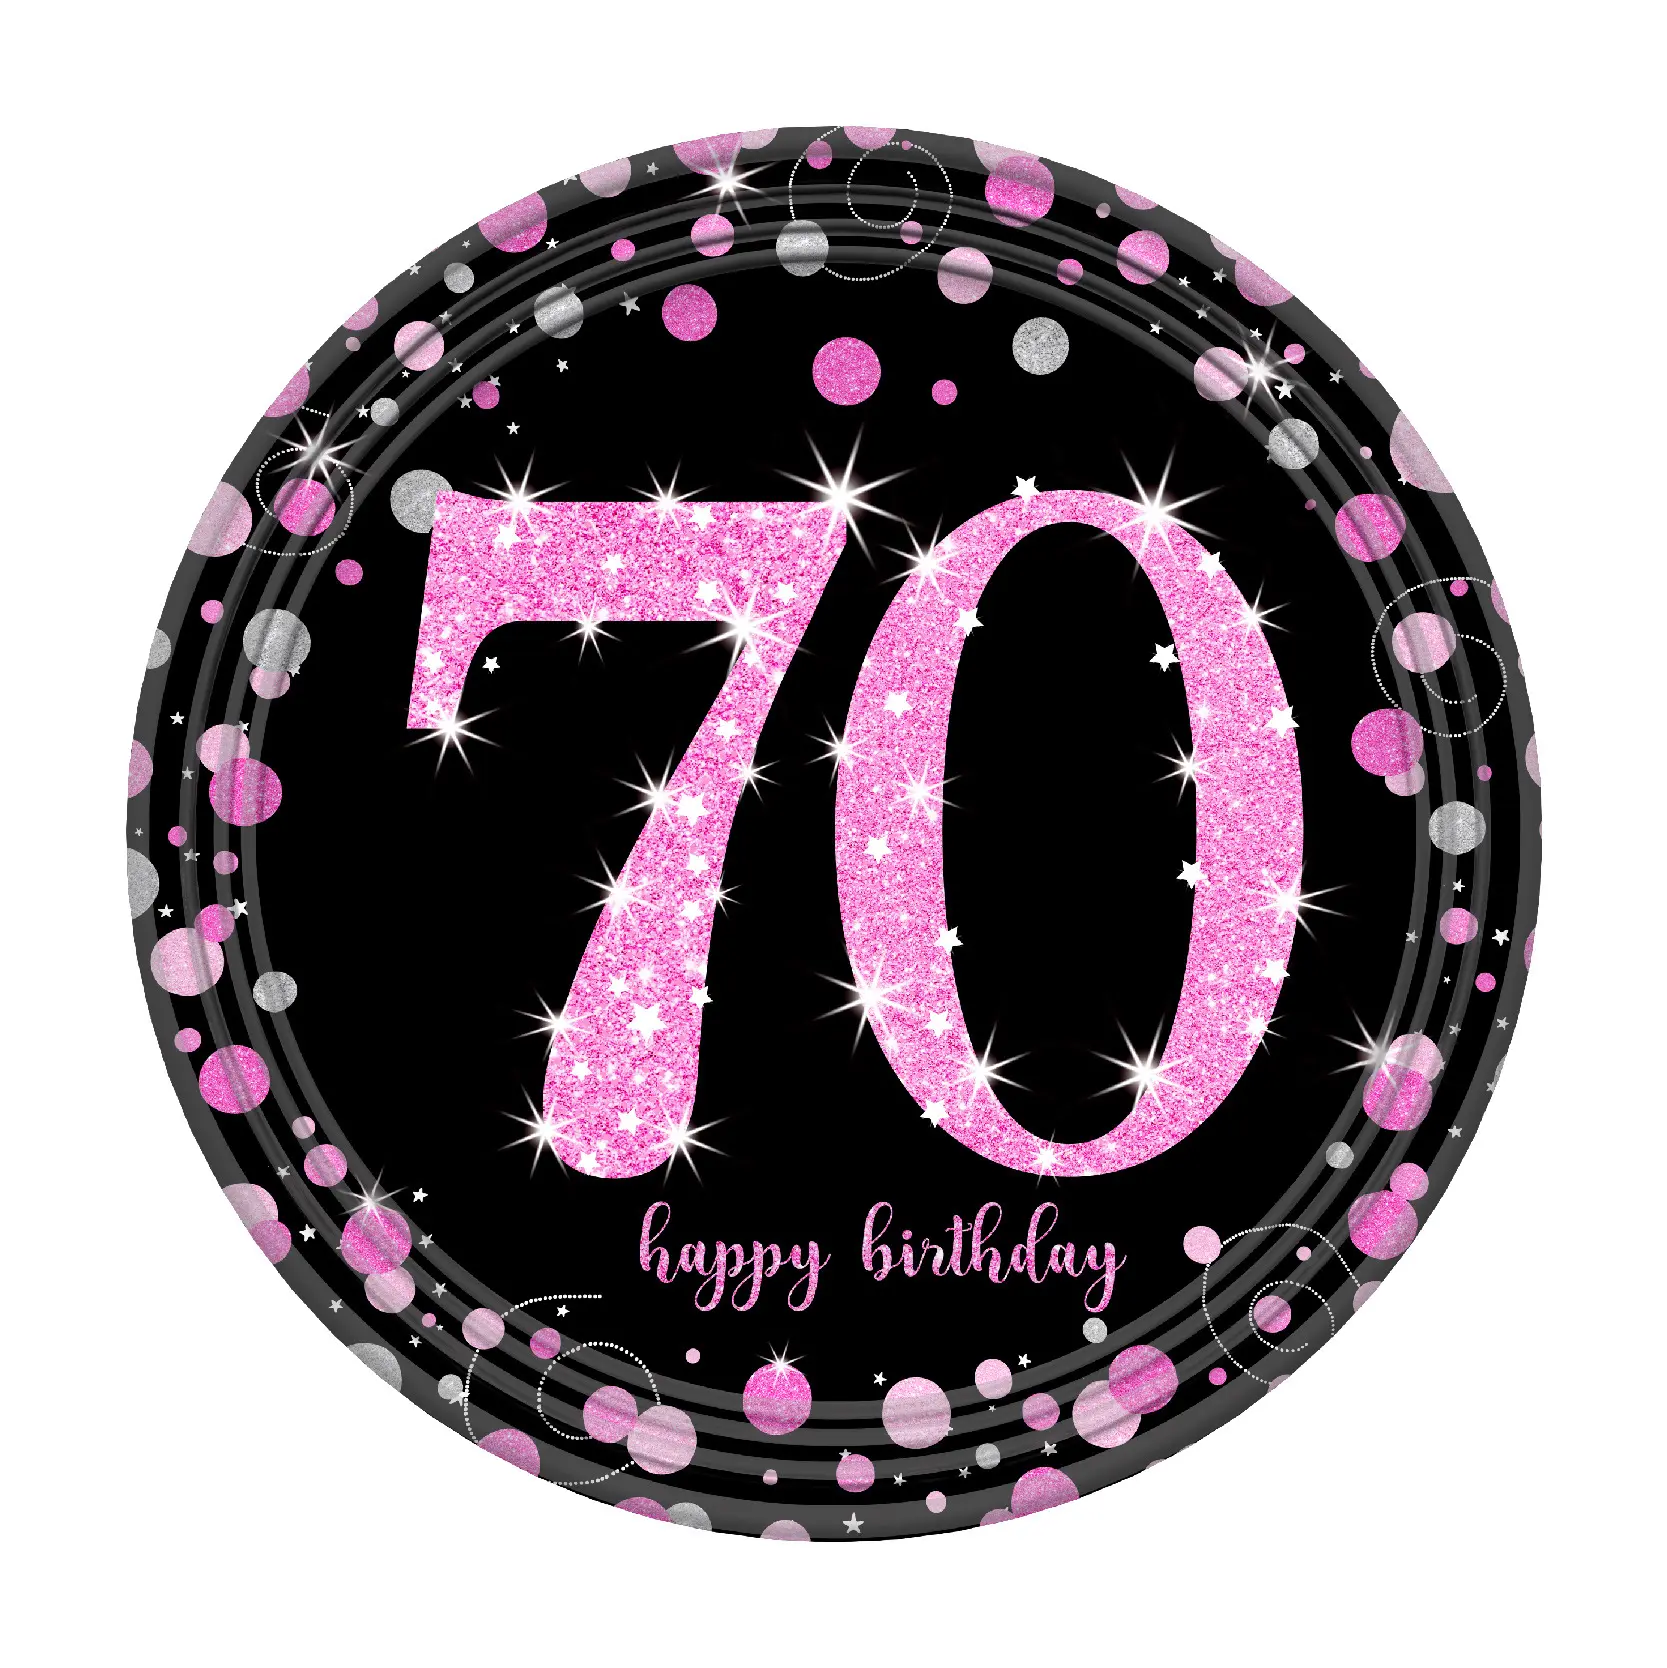 Siyah altın pembe 21th-80th yaşında doğum günü partisi malzemeleri dekorasyon tek kullanımlık sofra seti yıldönümü anma günü